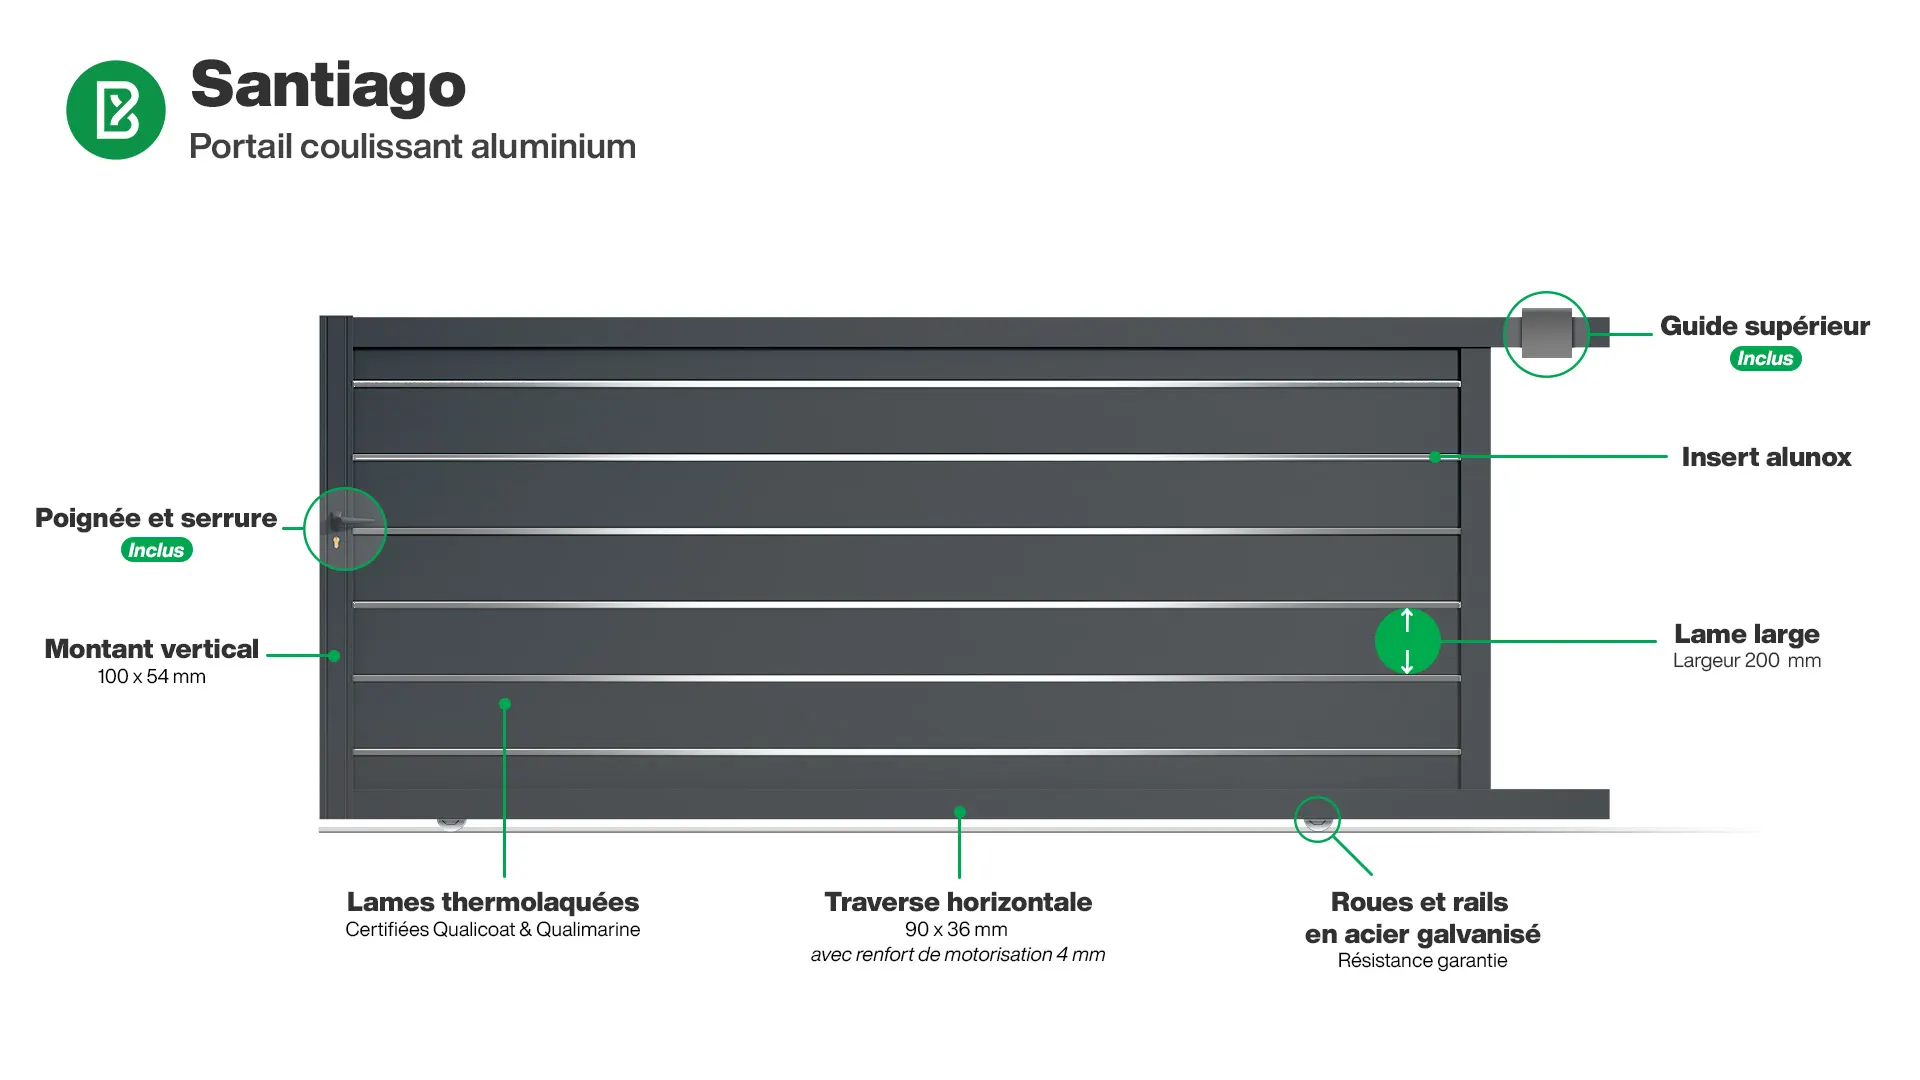 Portail : Infographie d'un portail coulissant aluminium modèle SANTIAGO